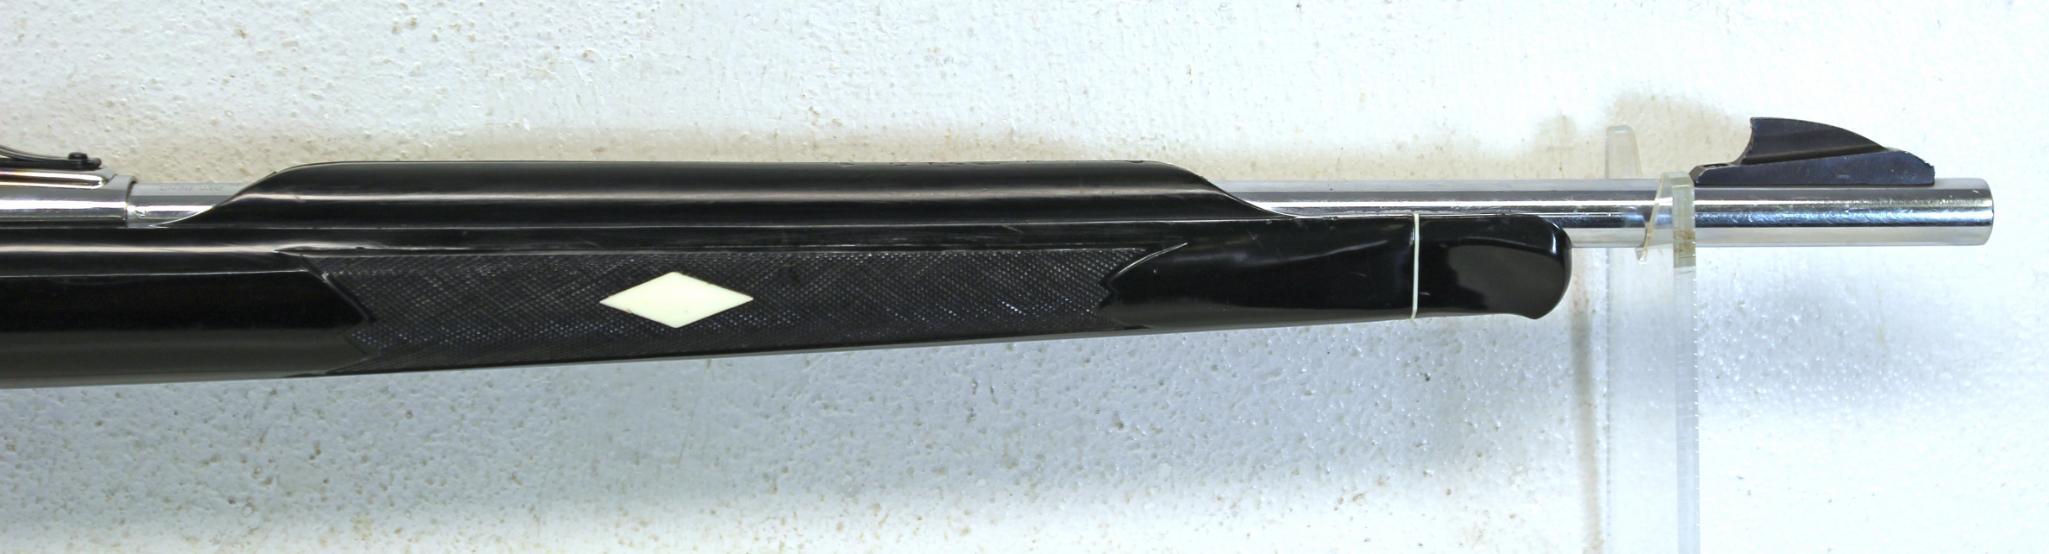 Remington Nylon 66 .22 LR Semi-Auto Rifle Apache Black and Chrome... SN#NSN...